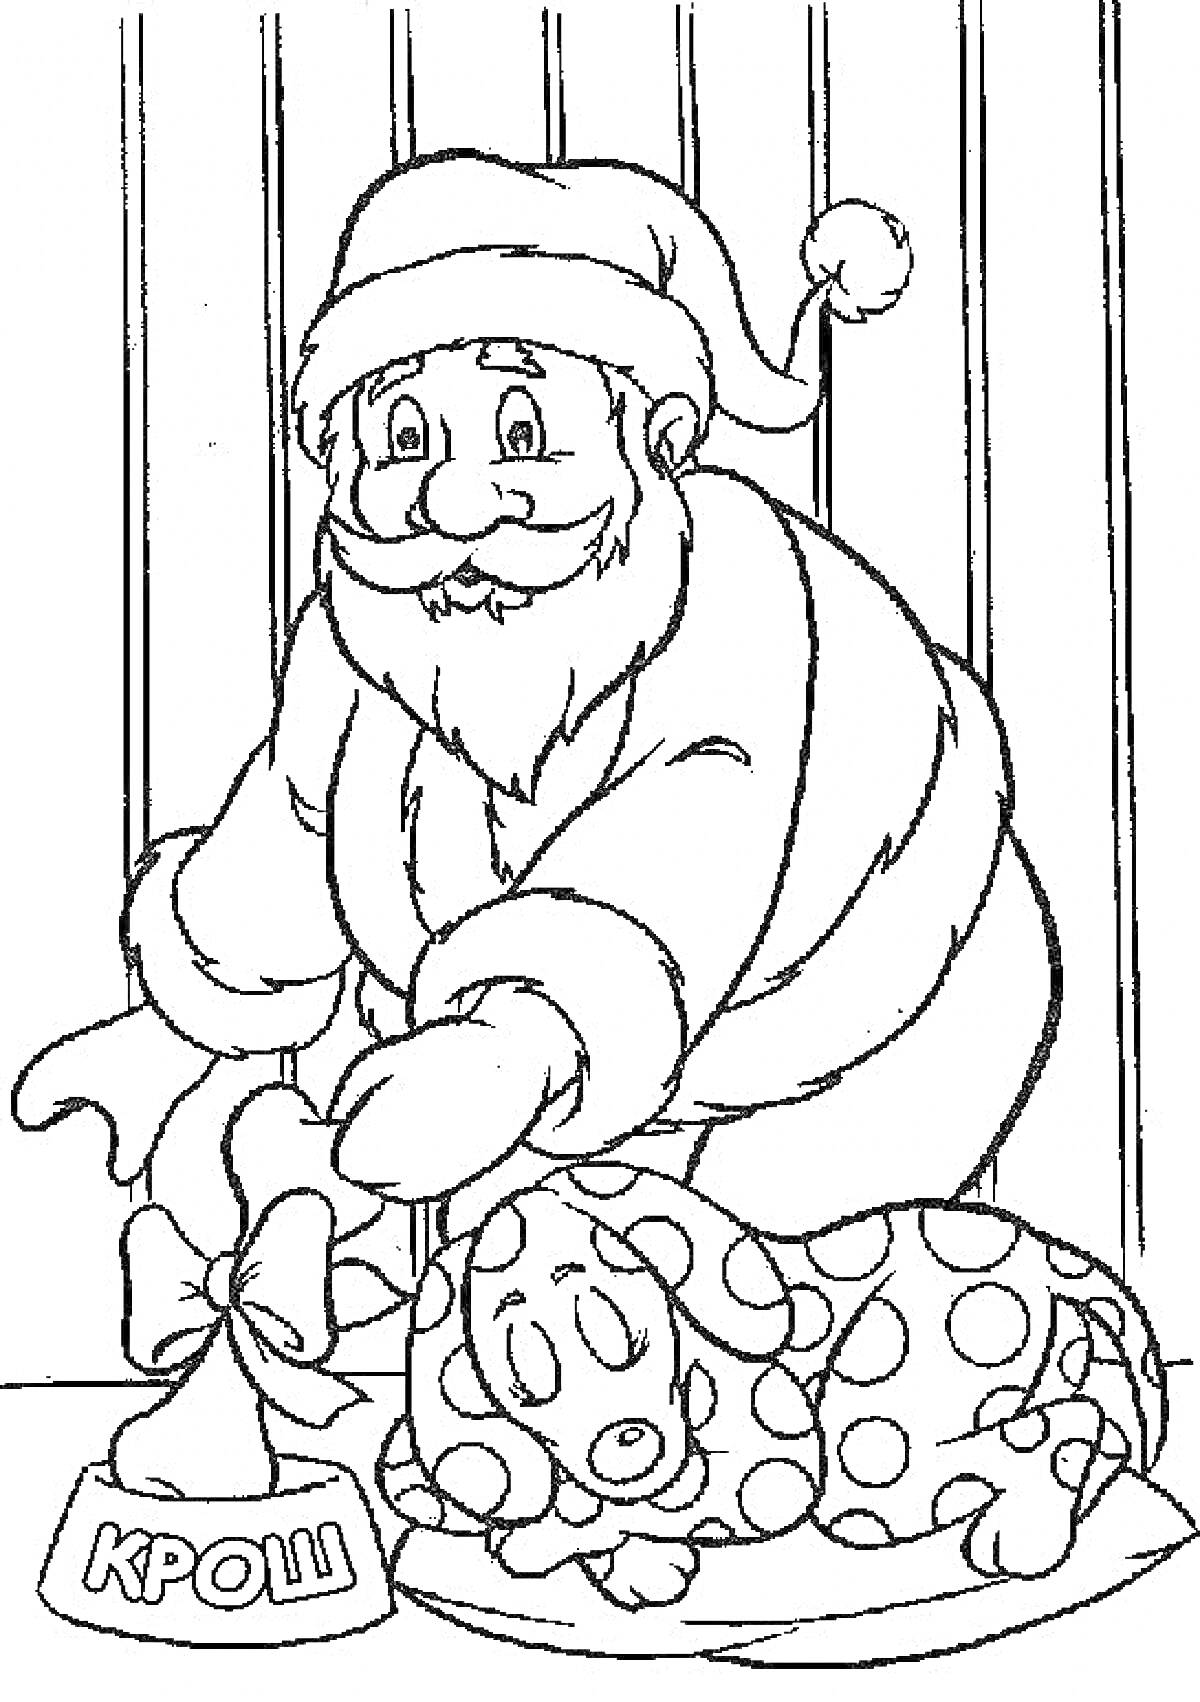 Дед Мороз кладёт подарок под ёлку со спящим персонажем Крош в костюме горошек